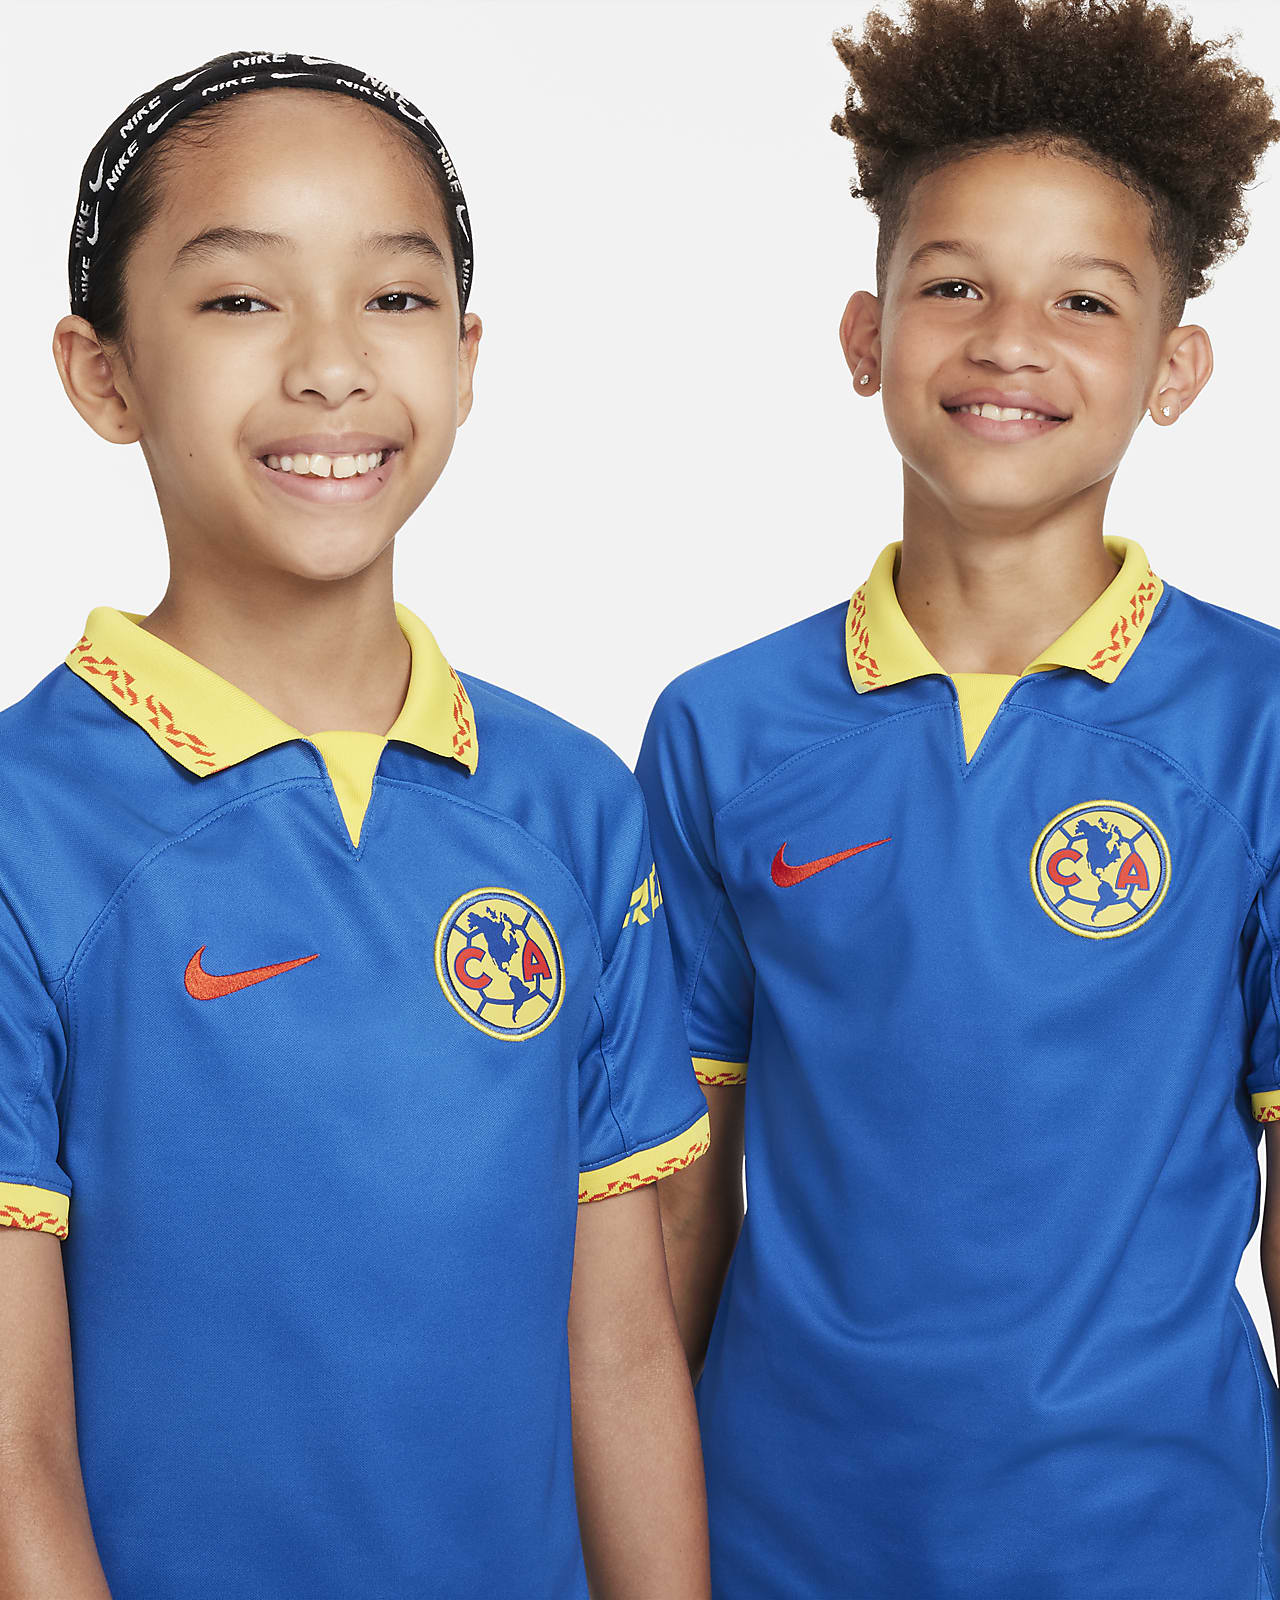 Niños Fútbol Jerseys. Nike US